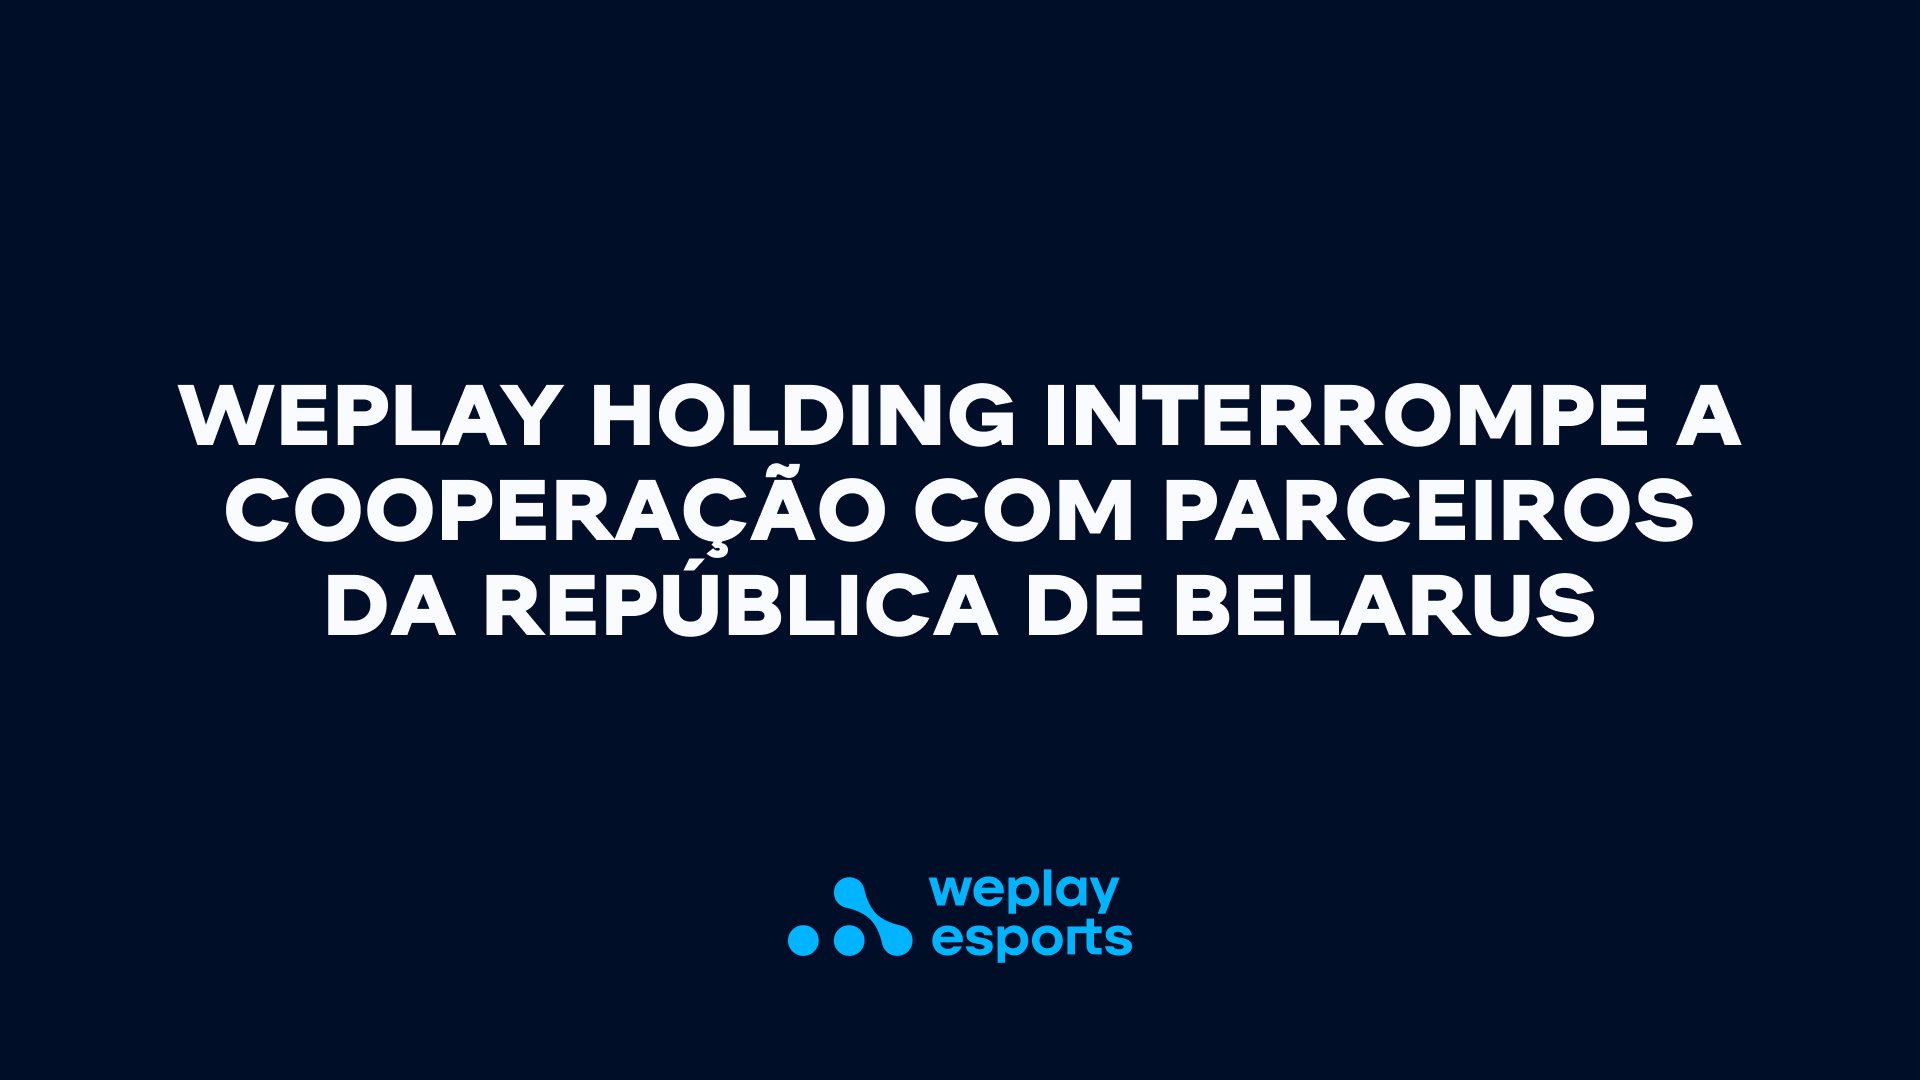 WePlay Holding interrompe a cooperação com parceiros da República de Belarus. Visual: WePlay Holding